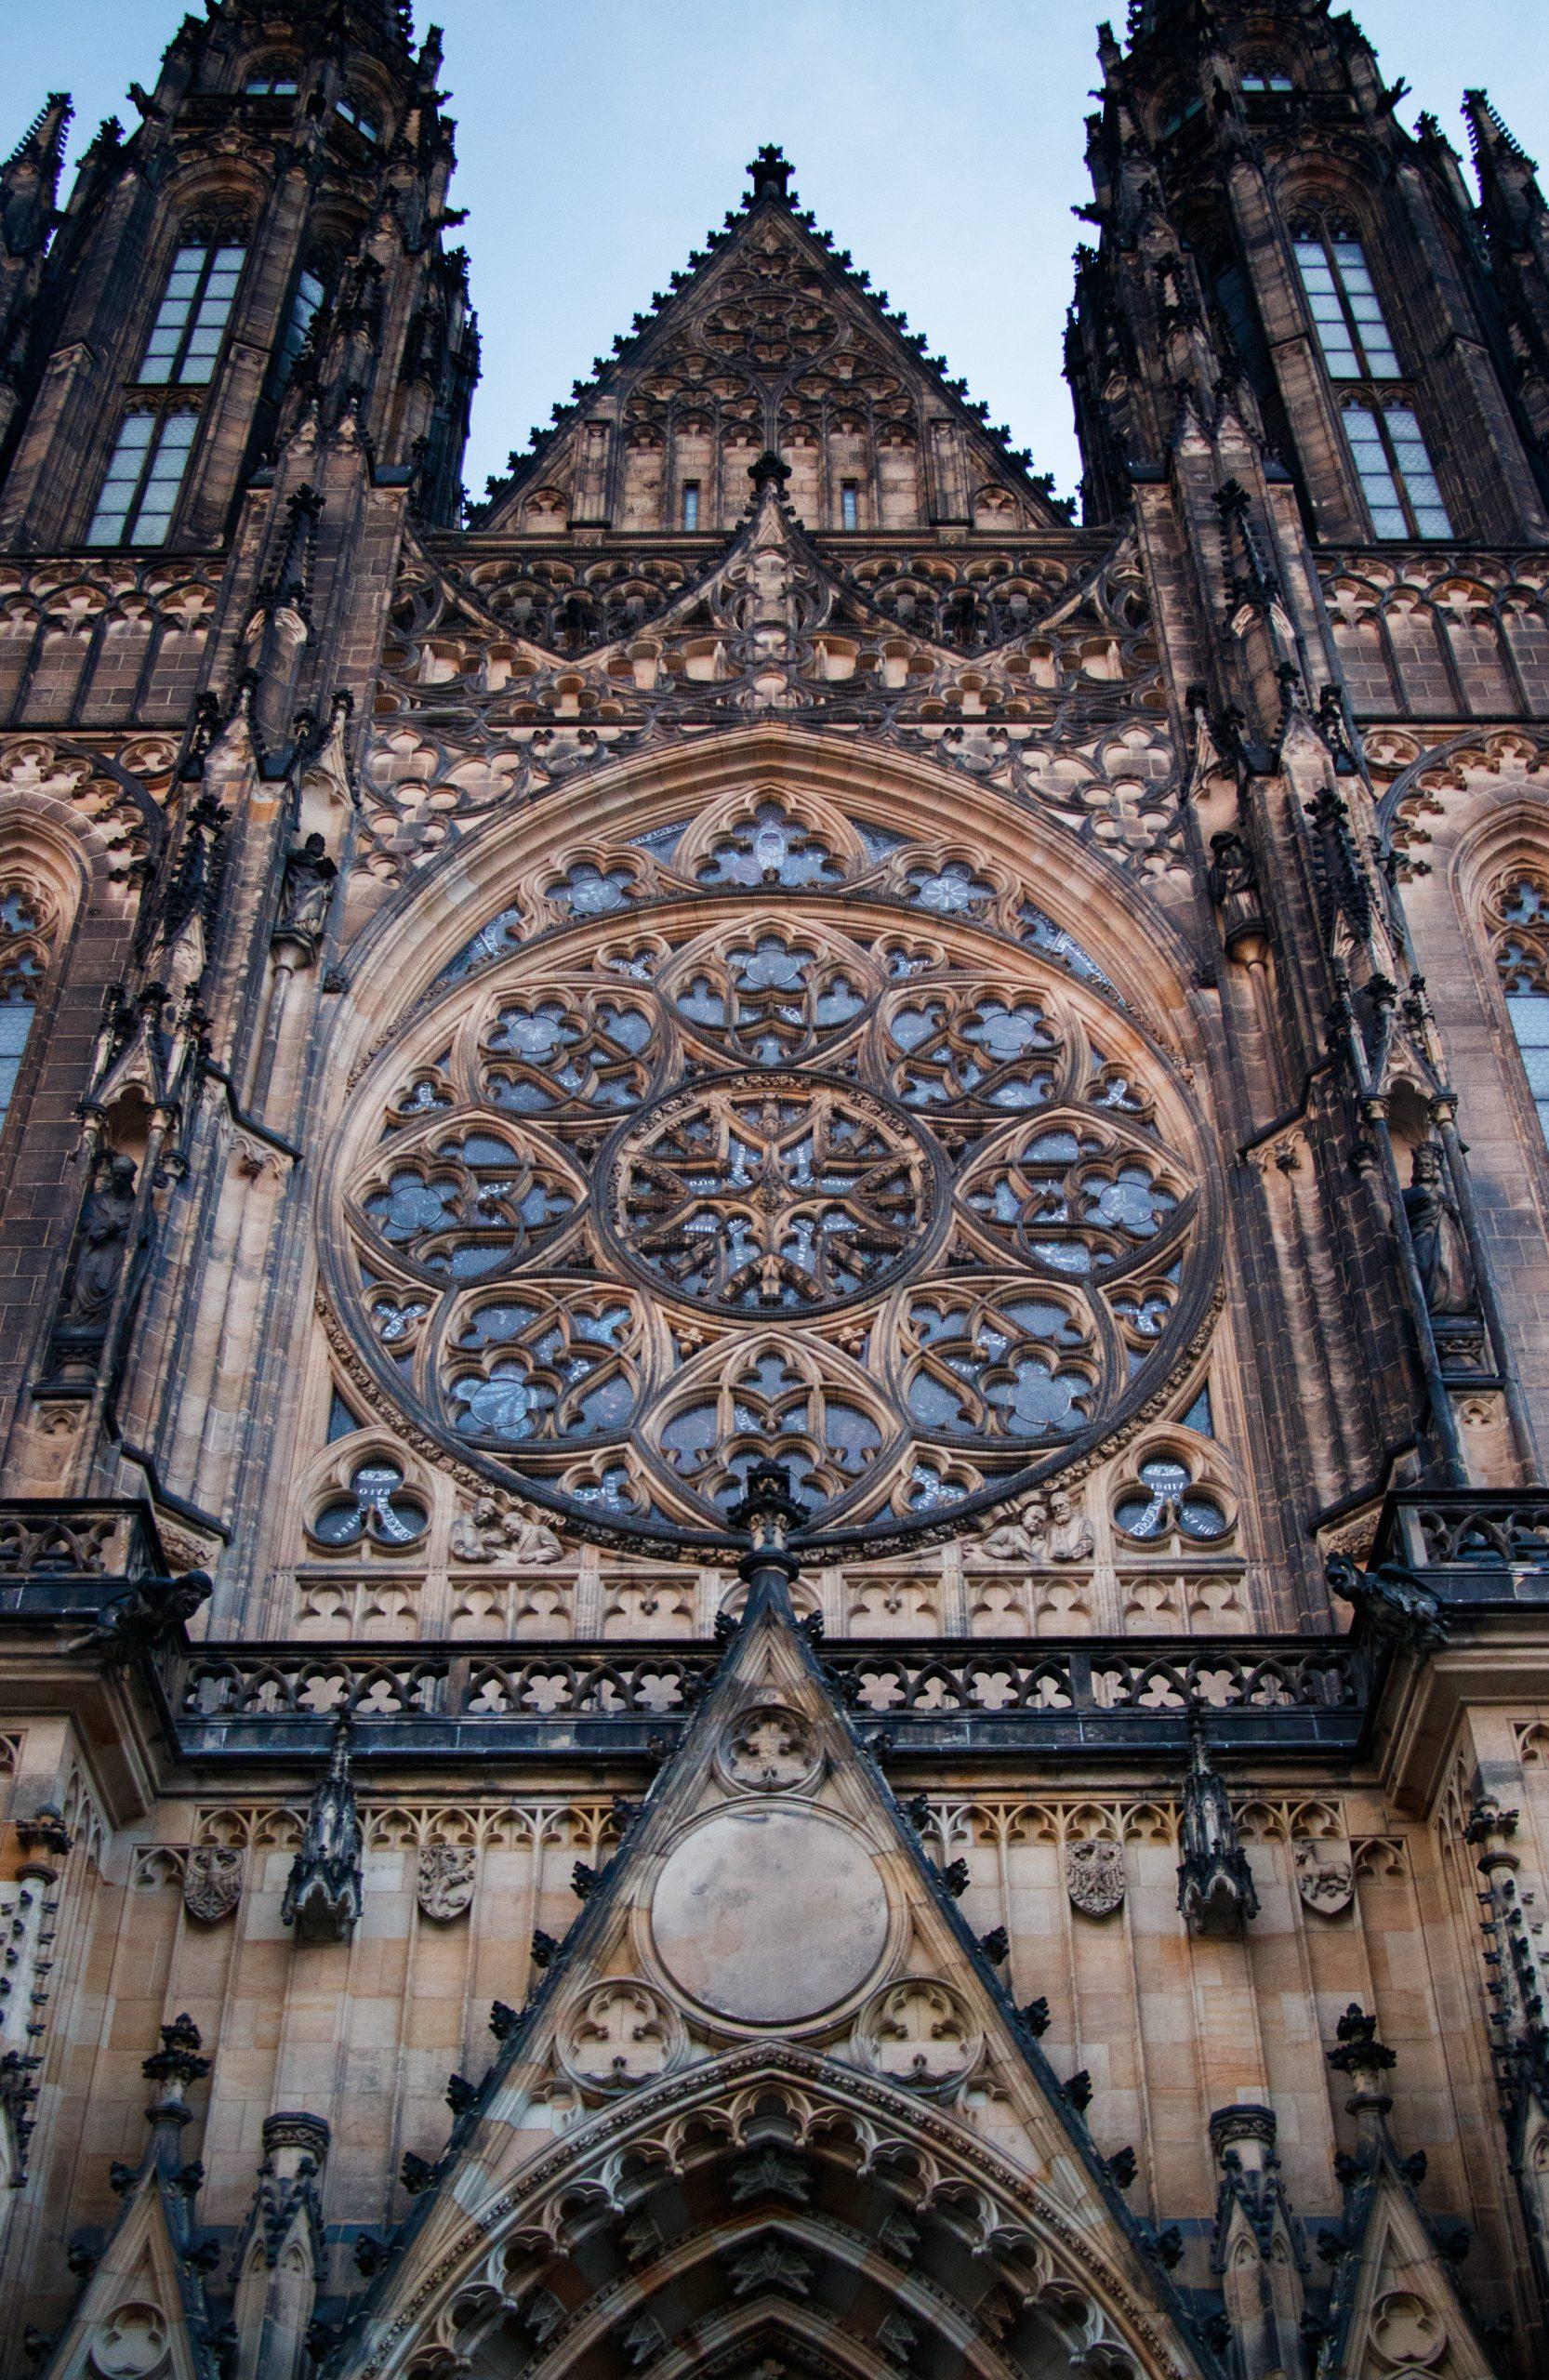 Lâu đài Praha với kiến trúc đặc trưng của châu Âu – Nguồn: Internet